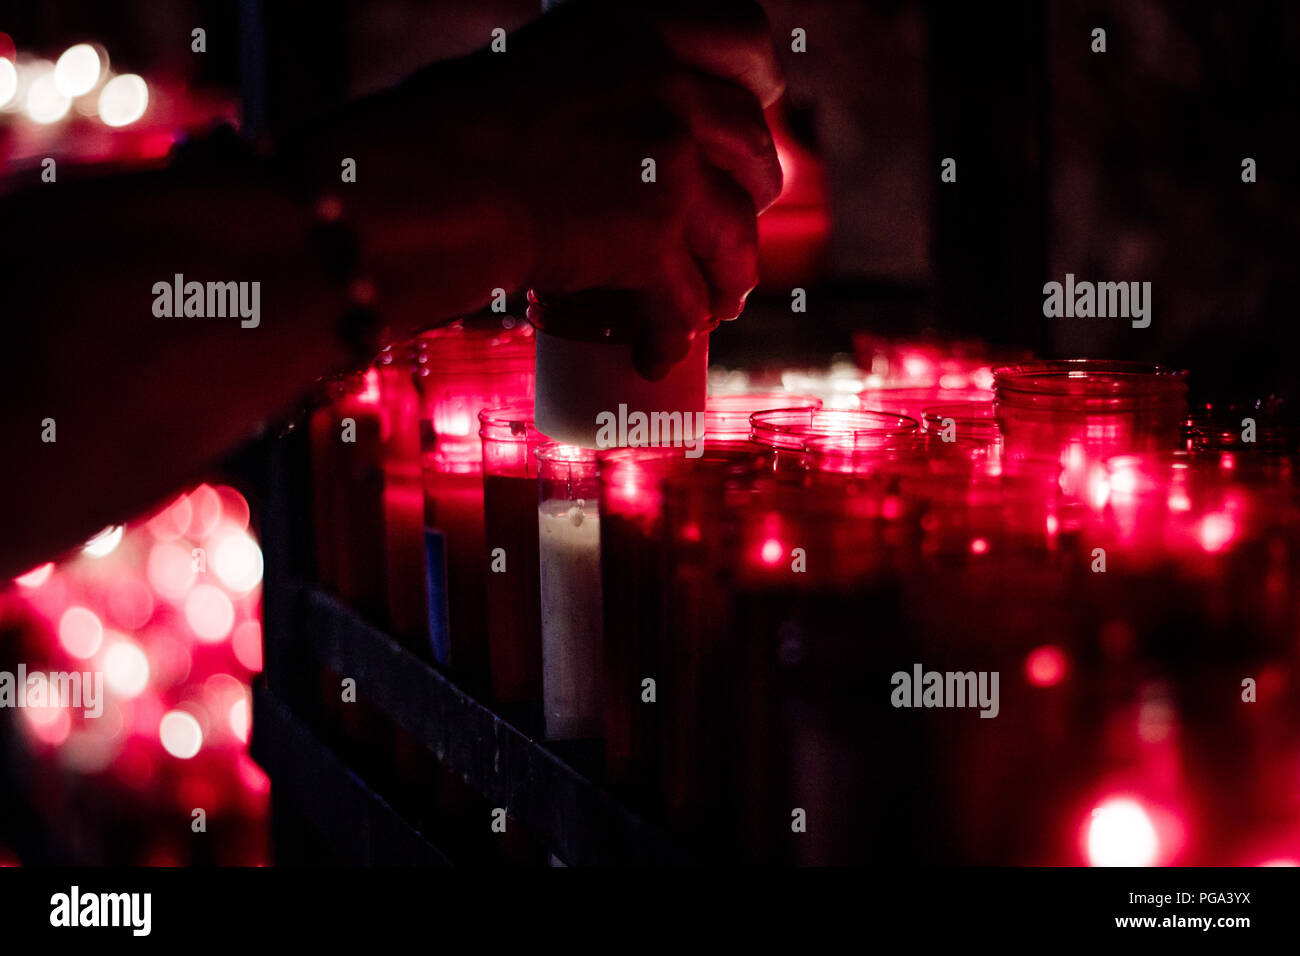 Religiöse Angebot, viele rote Kerzen in einem religiösen Ort Stockfoto